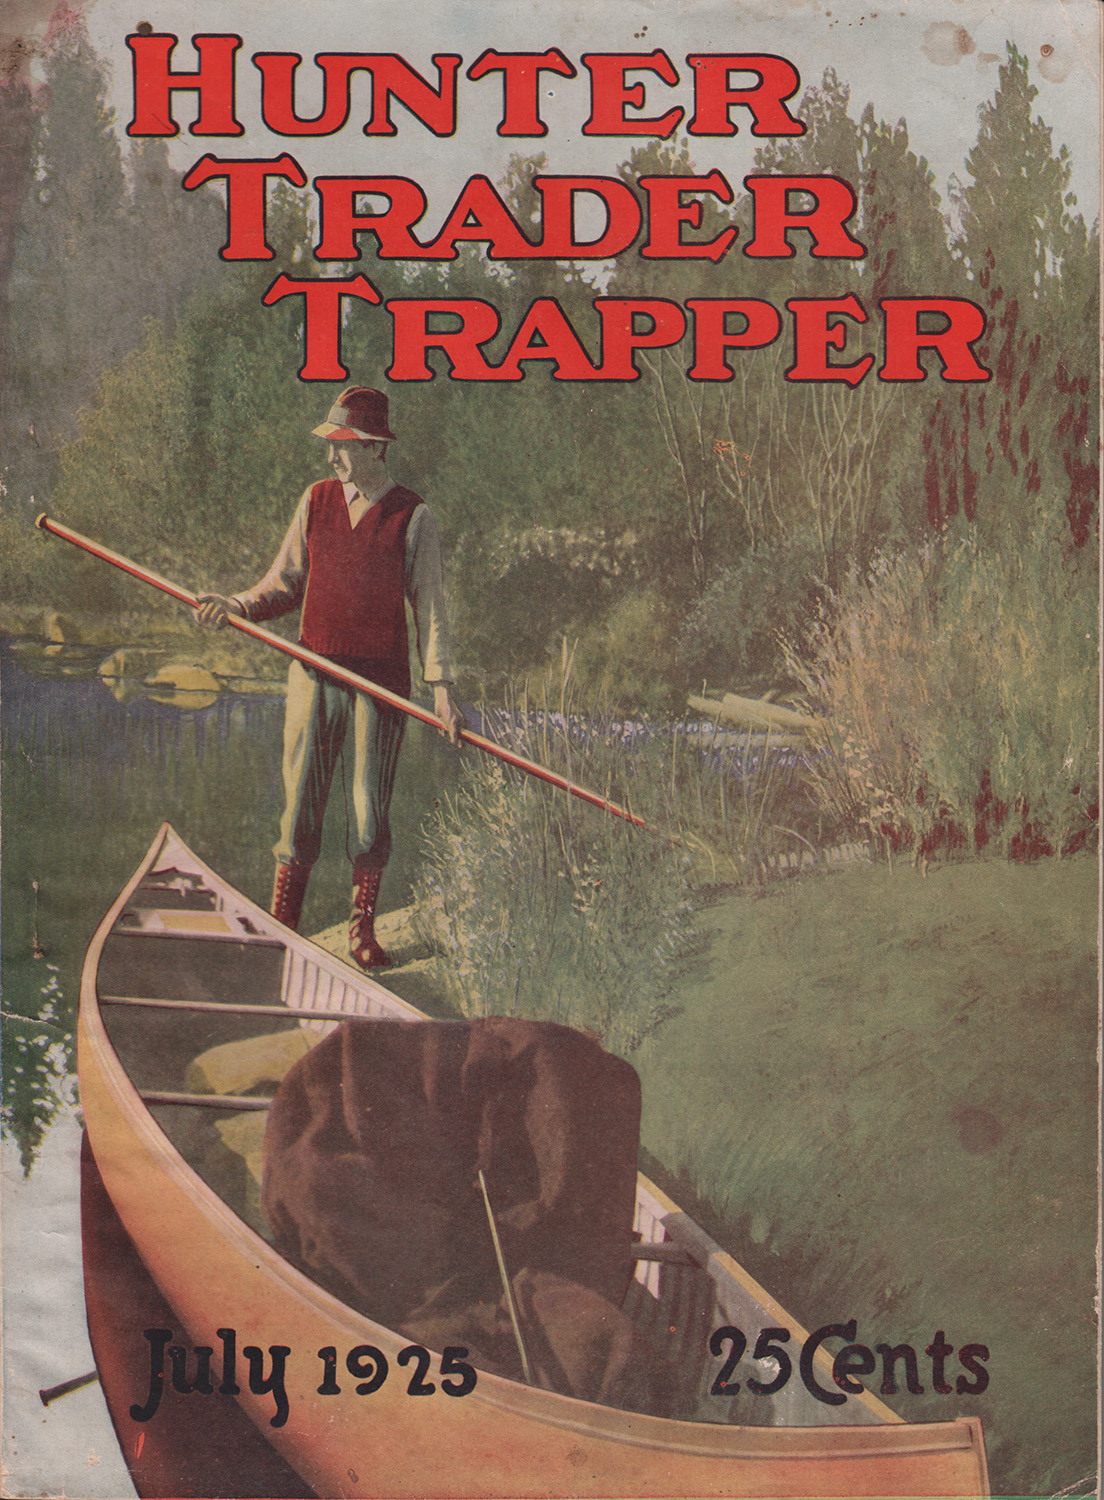 Hunter Trader Trapper July 1925